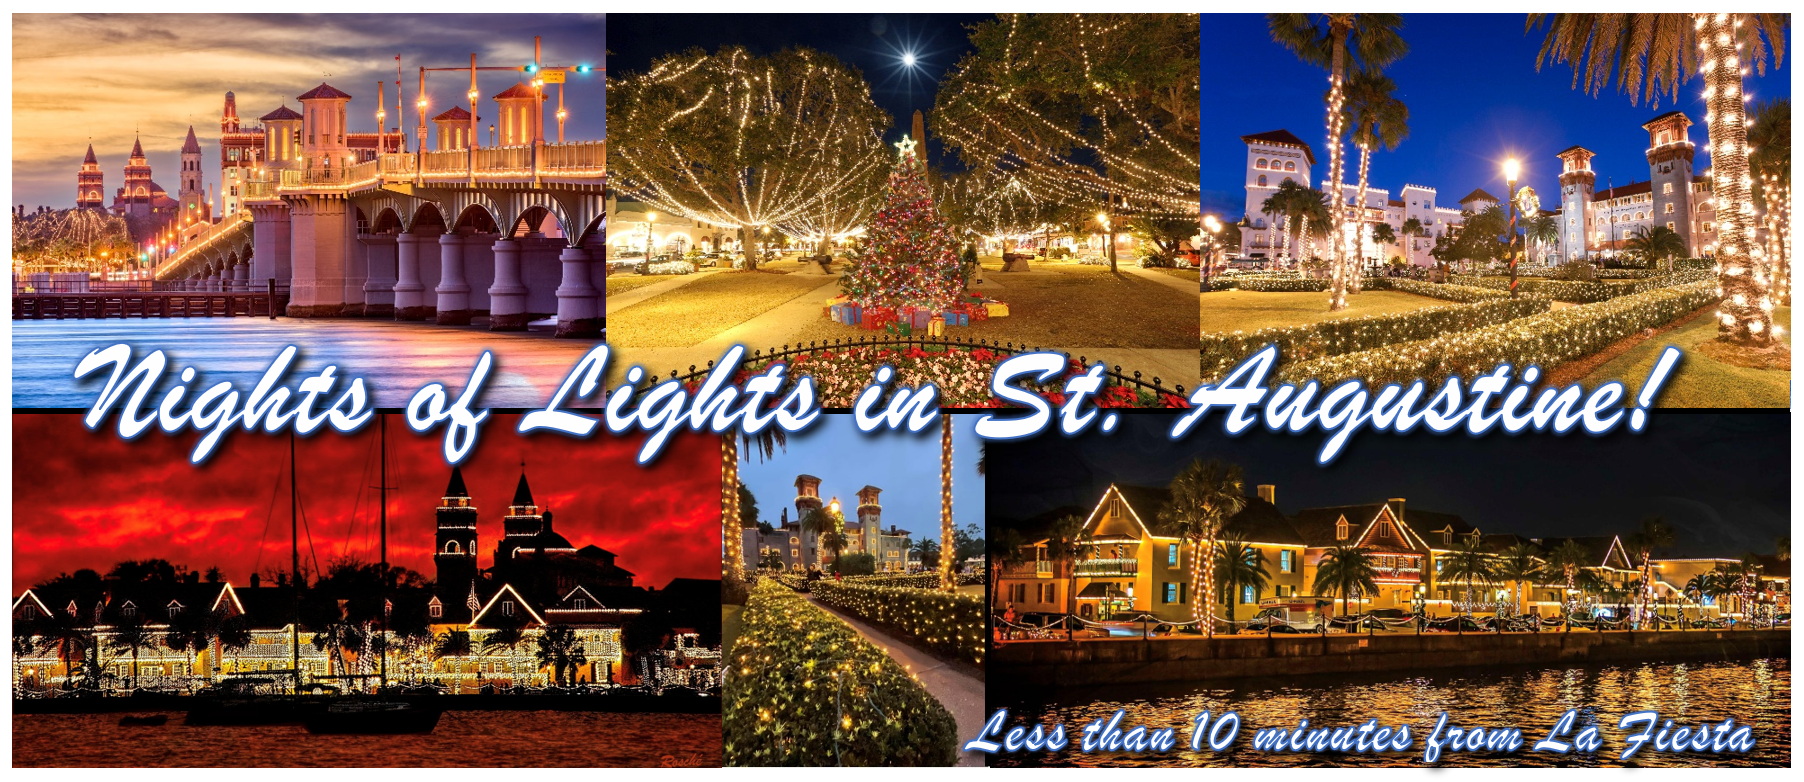 Nights of Lights celebration in St. Augustine near La Fiesta Ocean Inn